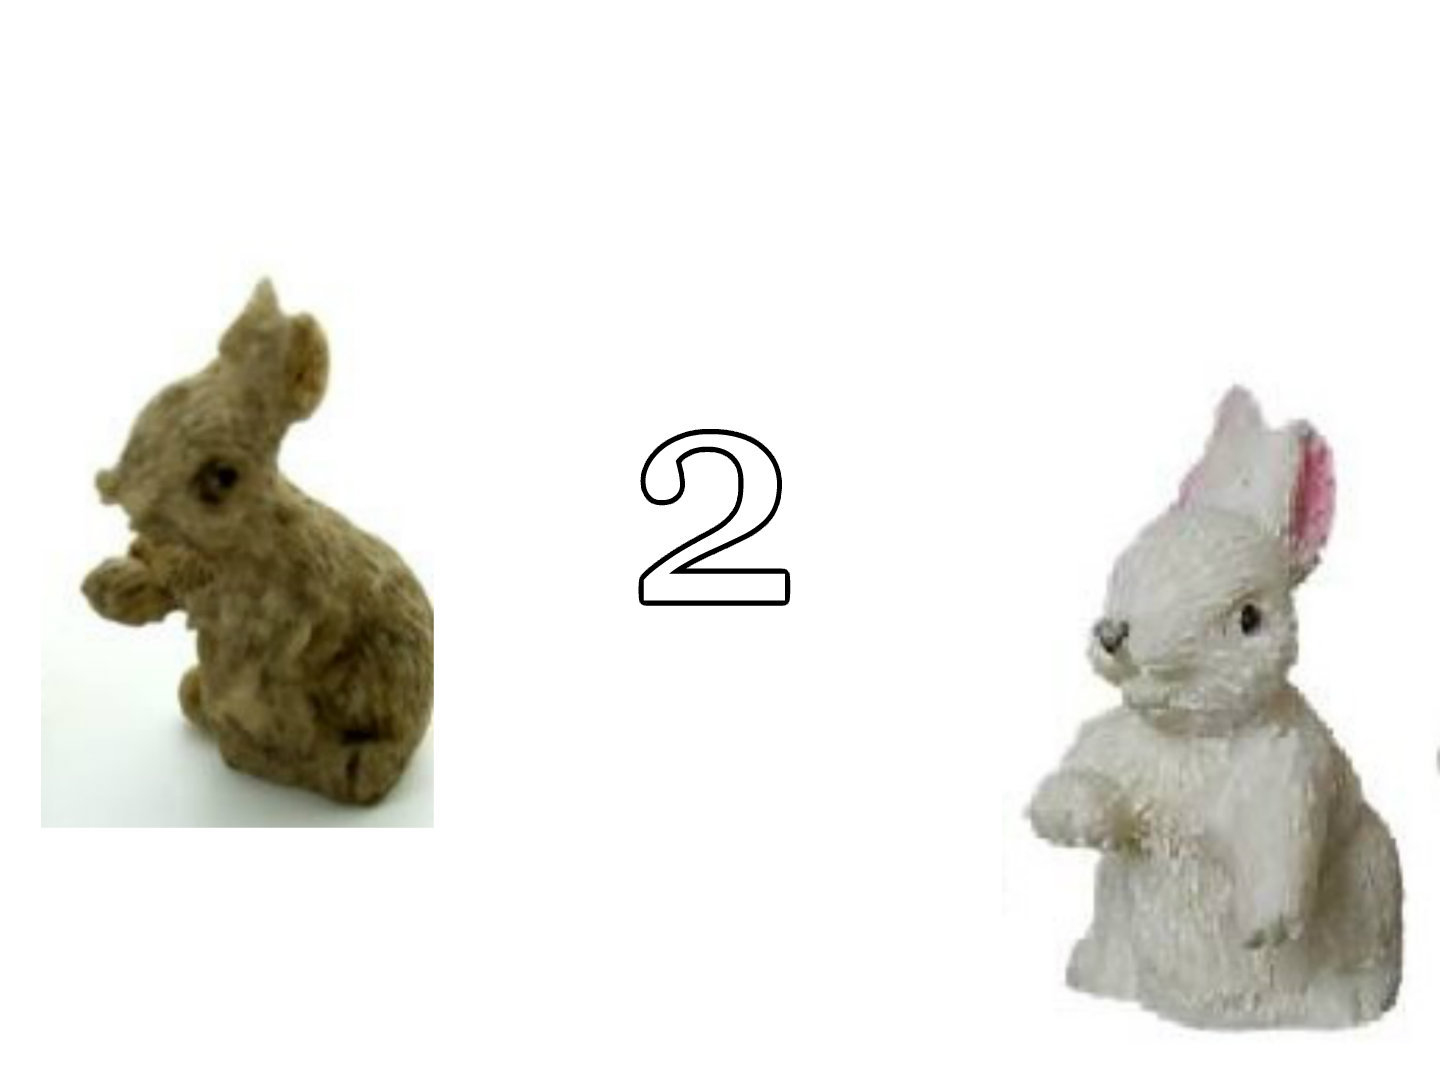 Hase Kaninchen Hasenstall Kaninchenstall für die Puppenstube das Puppenhaus Dollhouse Miniatures